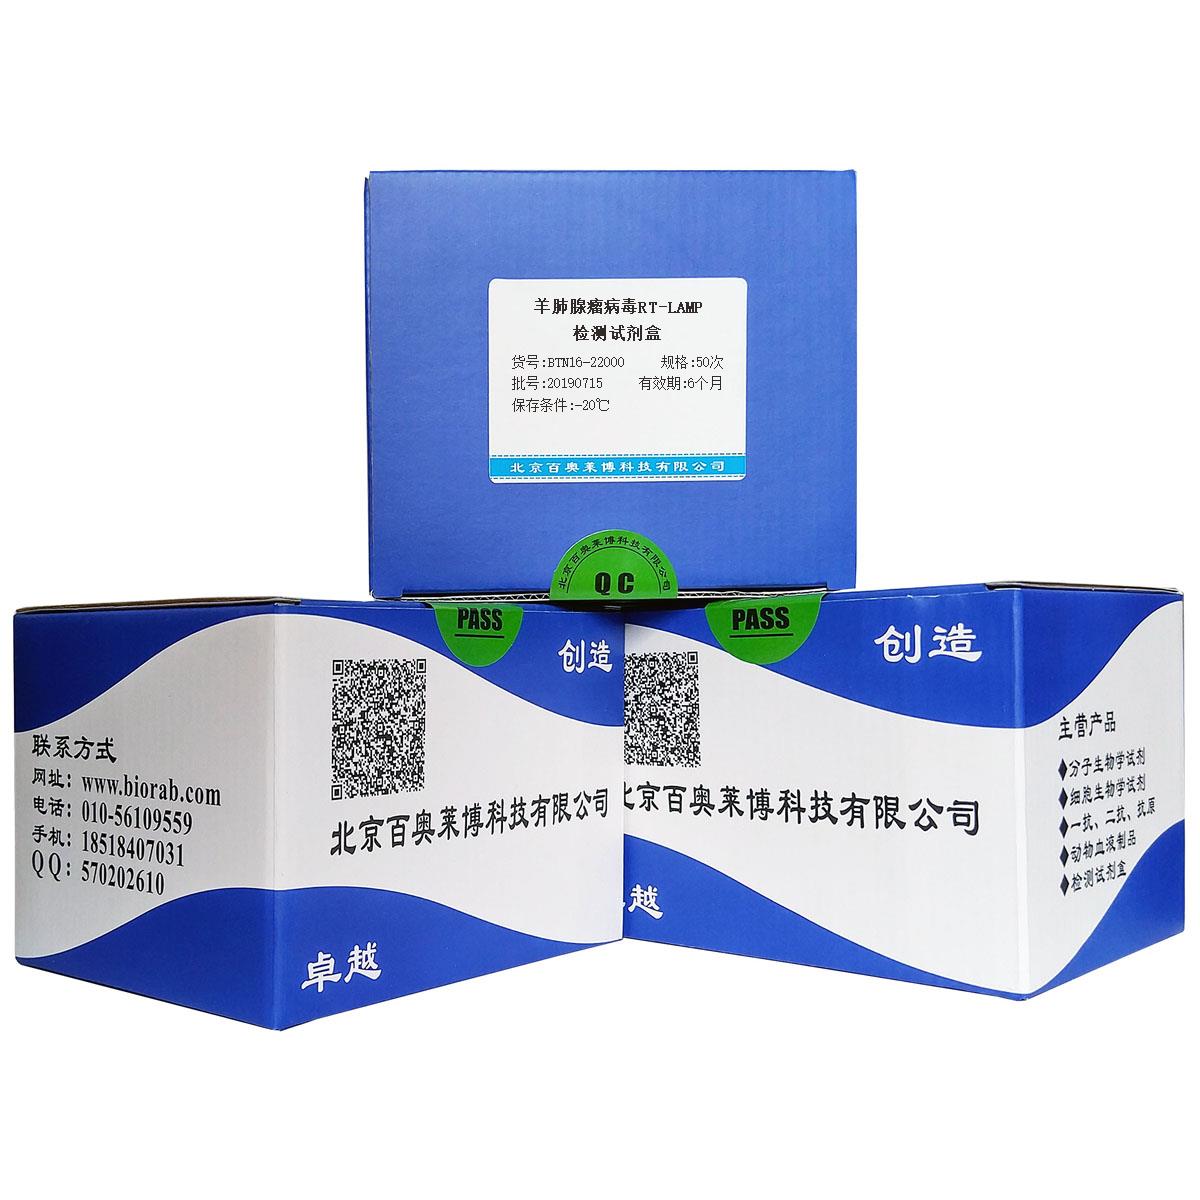 羊肺腺瘤病毒RT-LAMP检测试剂盒北京供应商